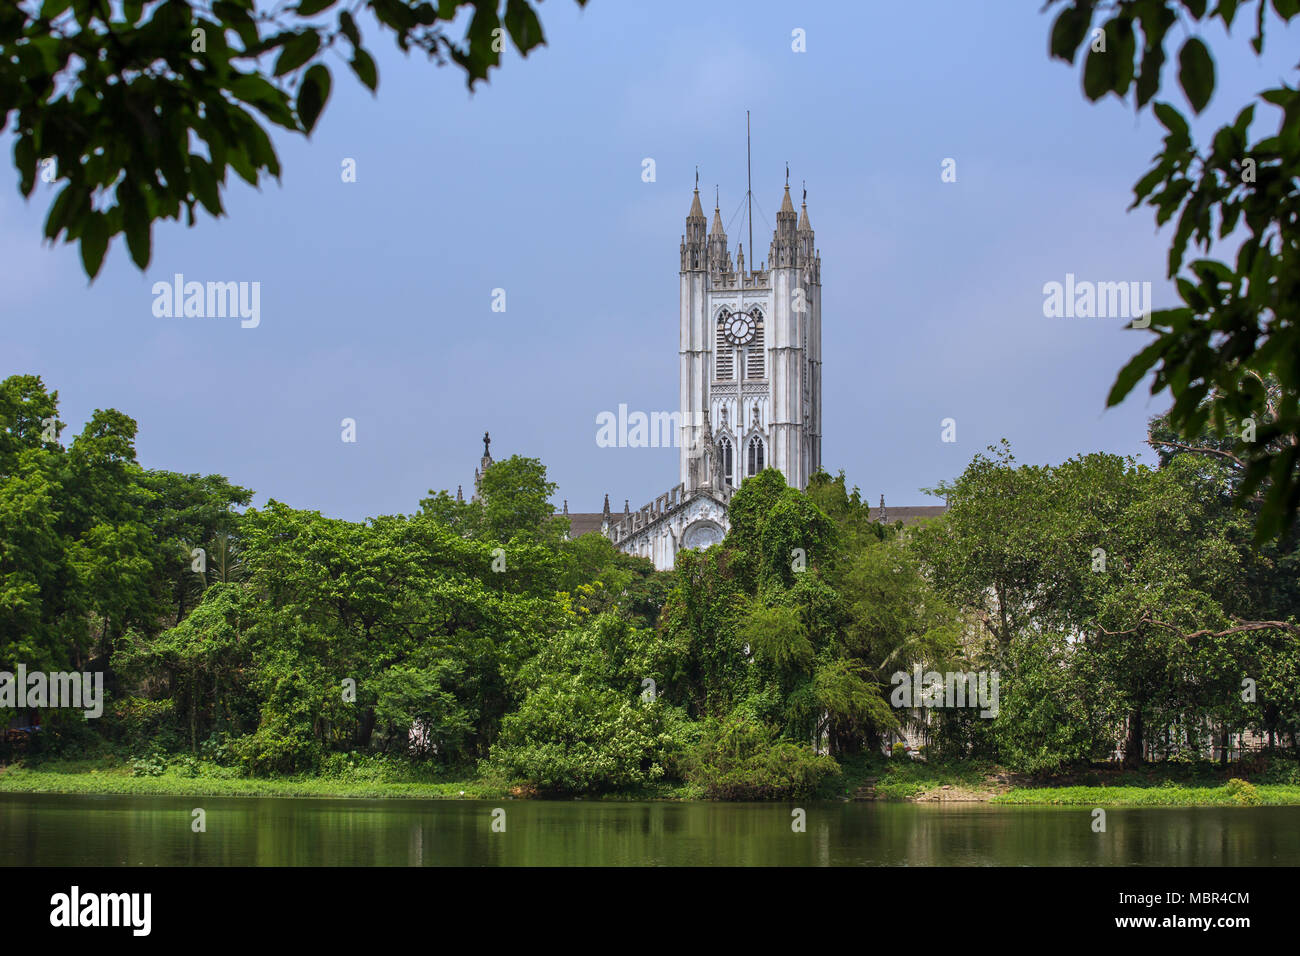 La Cathédrale St Paul est une cathédrale anglicane de Kolkata, au Bengale occidental, en Inde. Banque D'Images